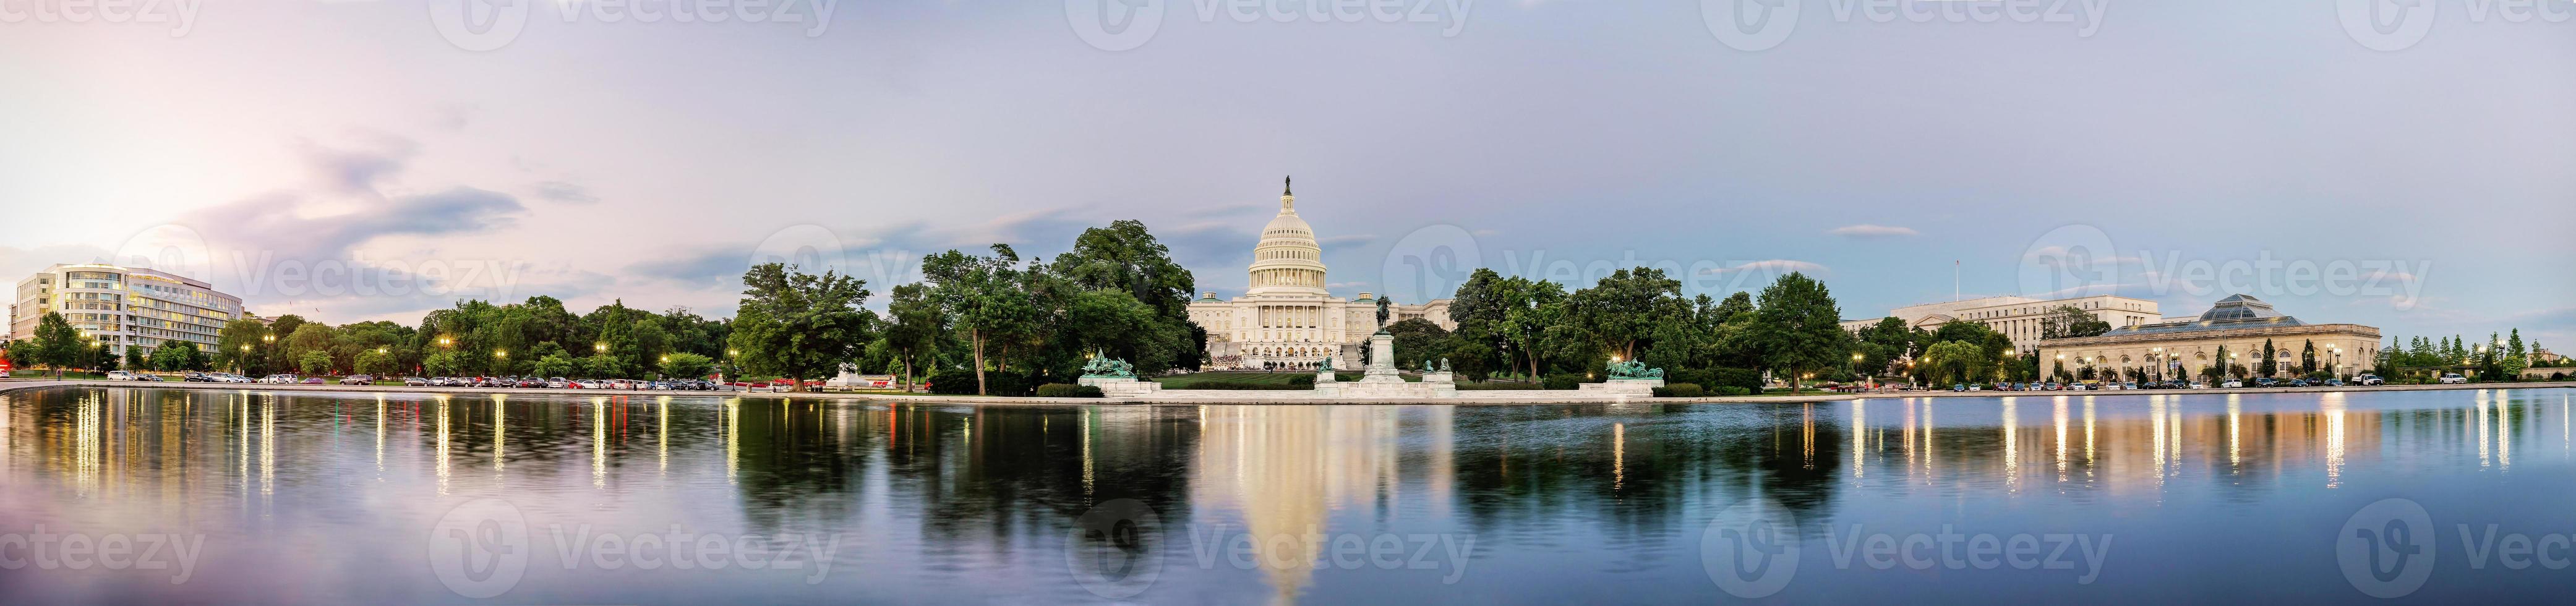 Campidoglio degli Stati Uniti, Washington DC, USA foto